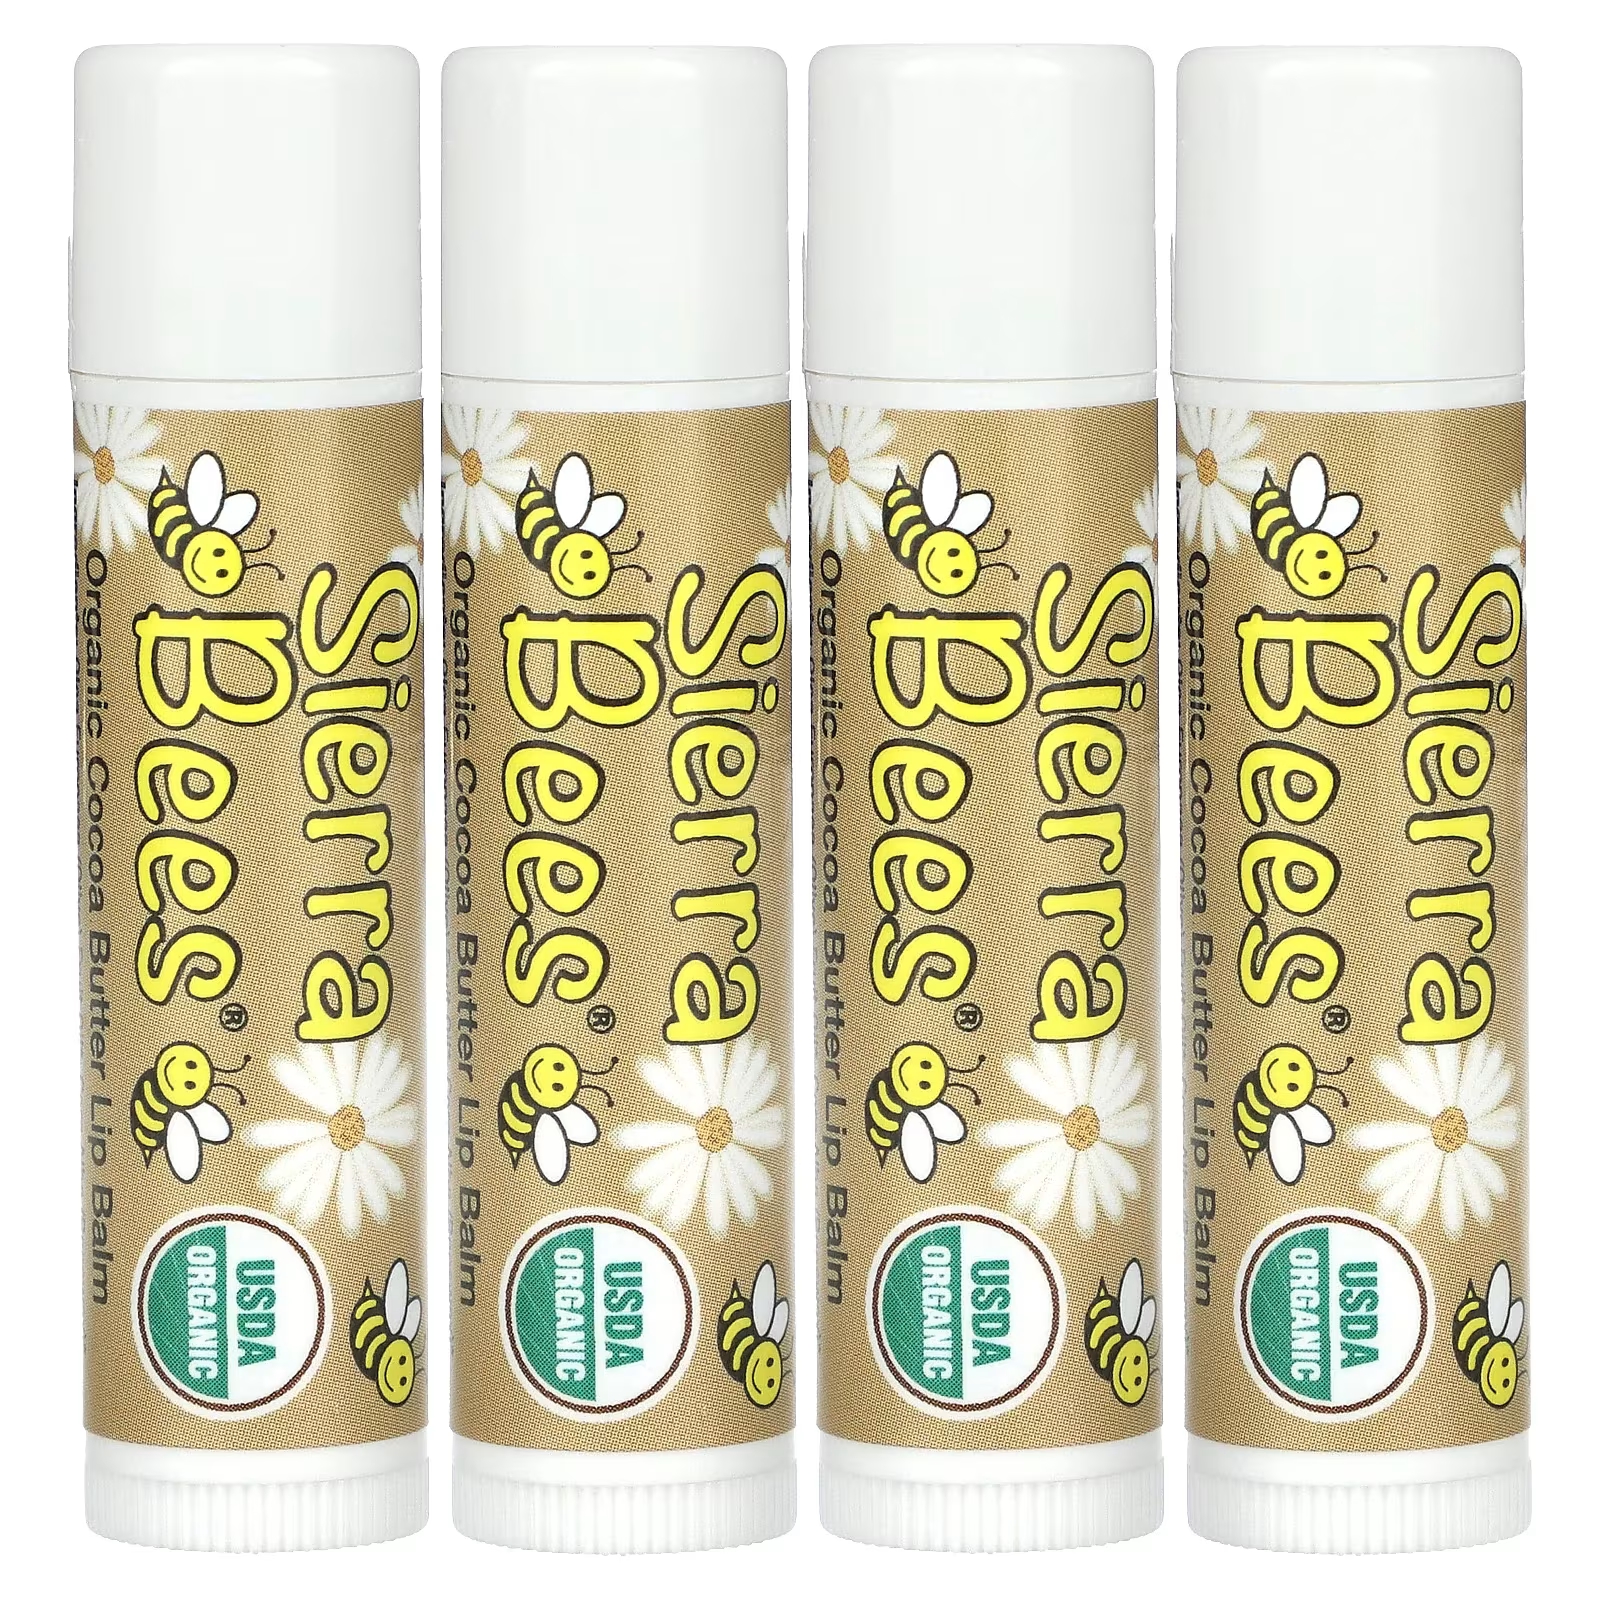 Органические бальзамы для губ Sierra Bees с маслом какао, 4 упаковки по 4,25 г